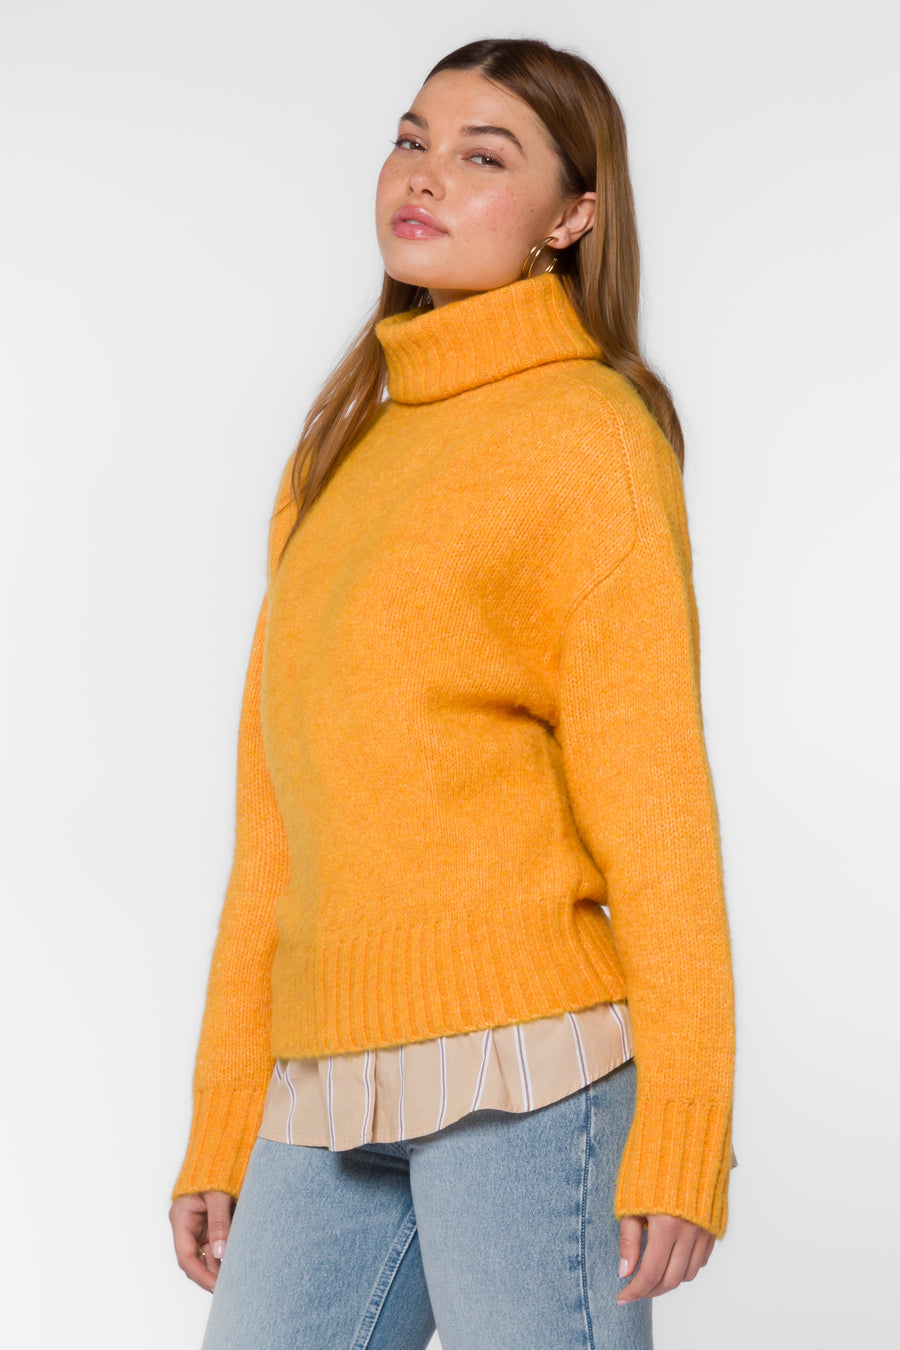 Tillie Turtleneck Sweater